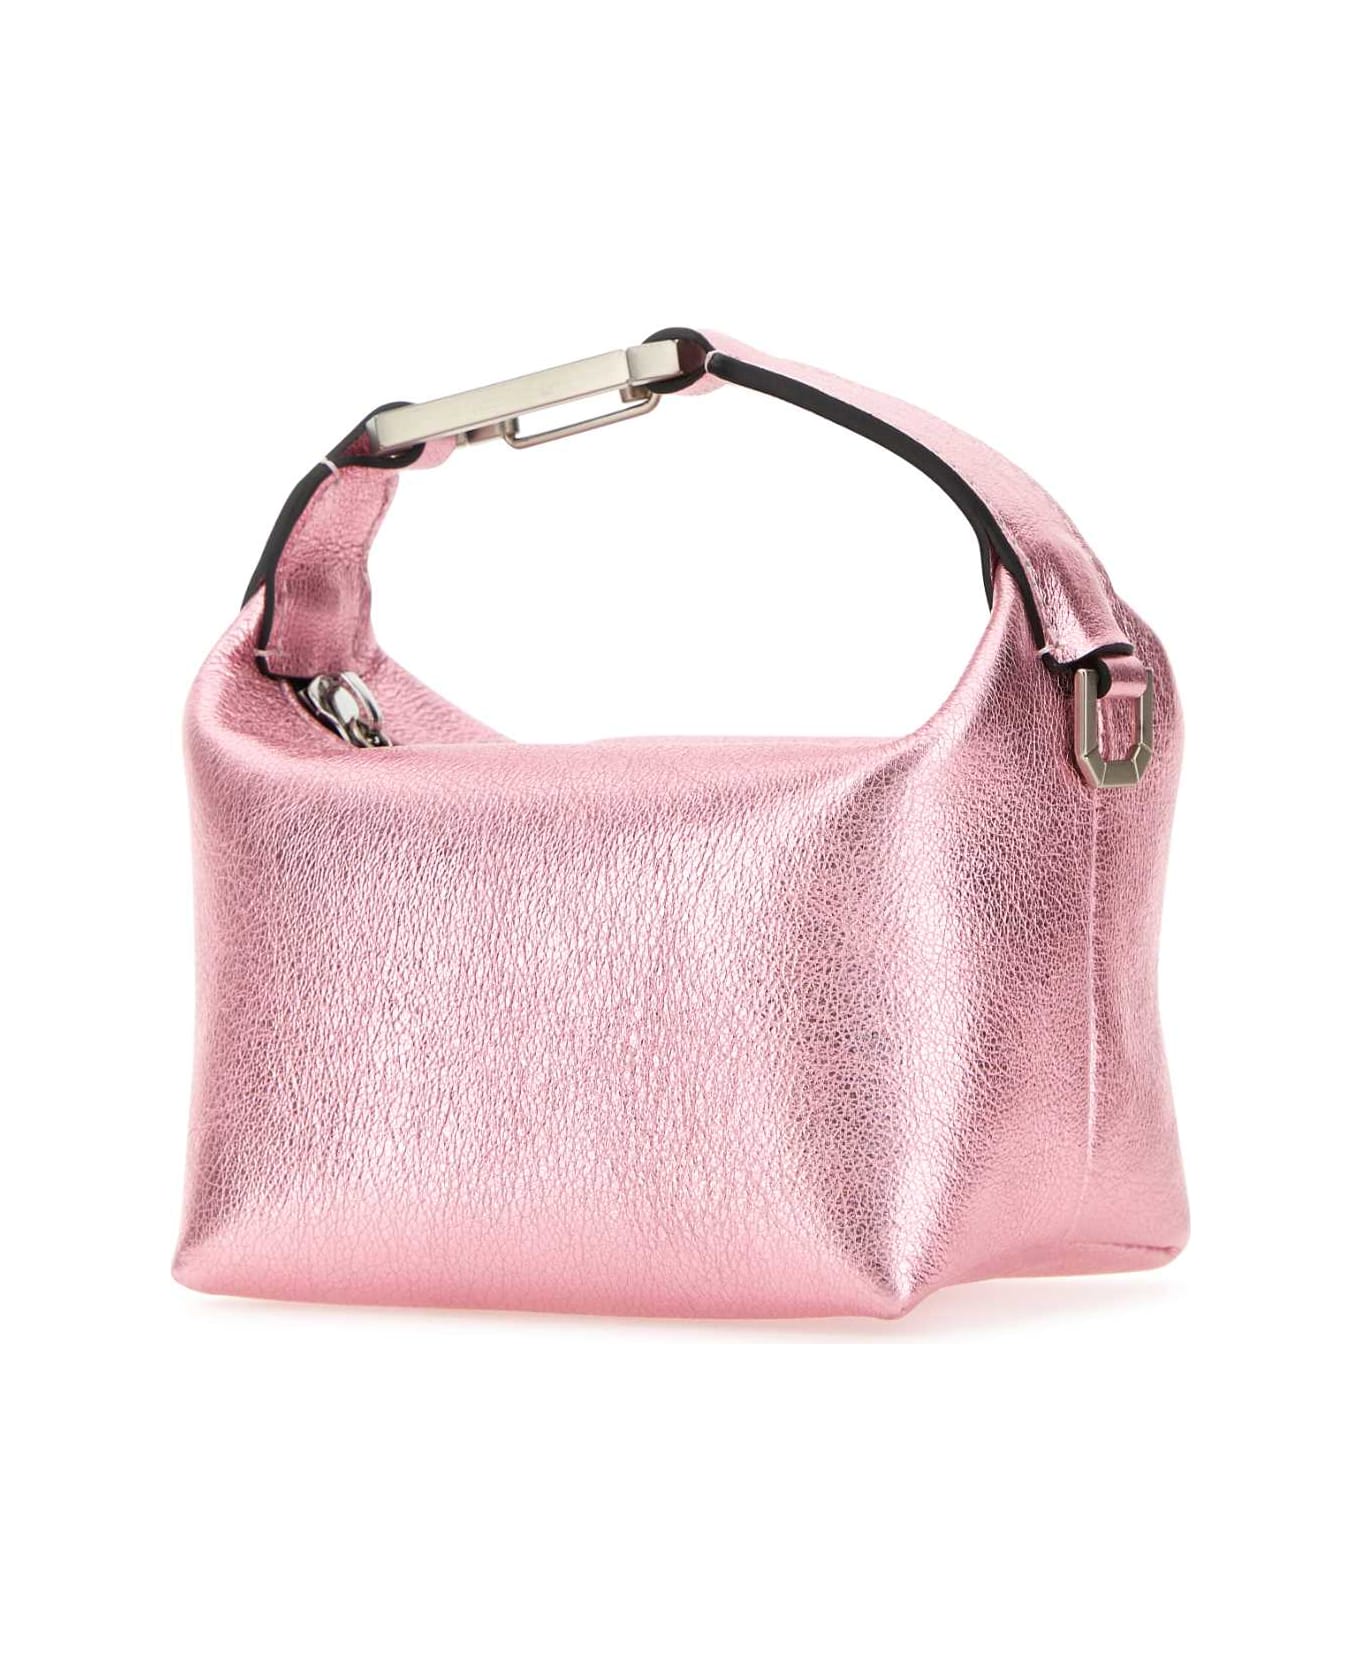 EÉRA Pink Leather Moonbag Handbag - PALEPINK